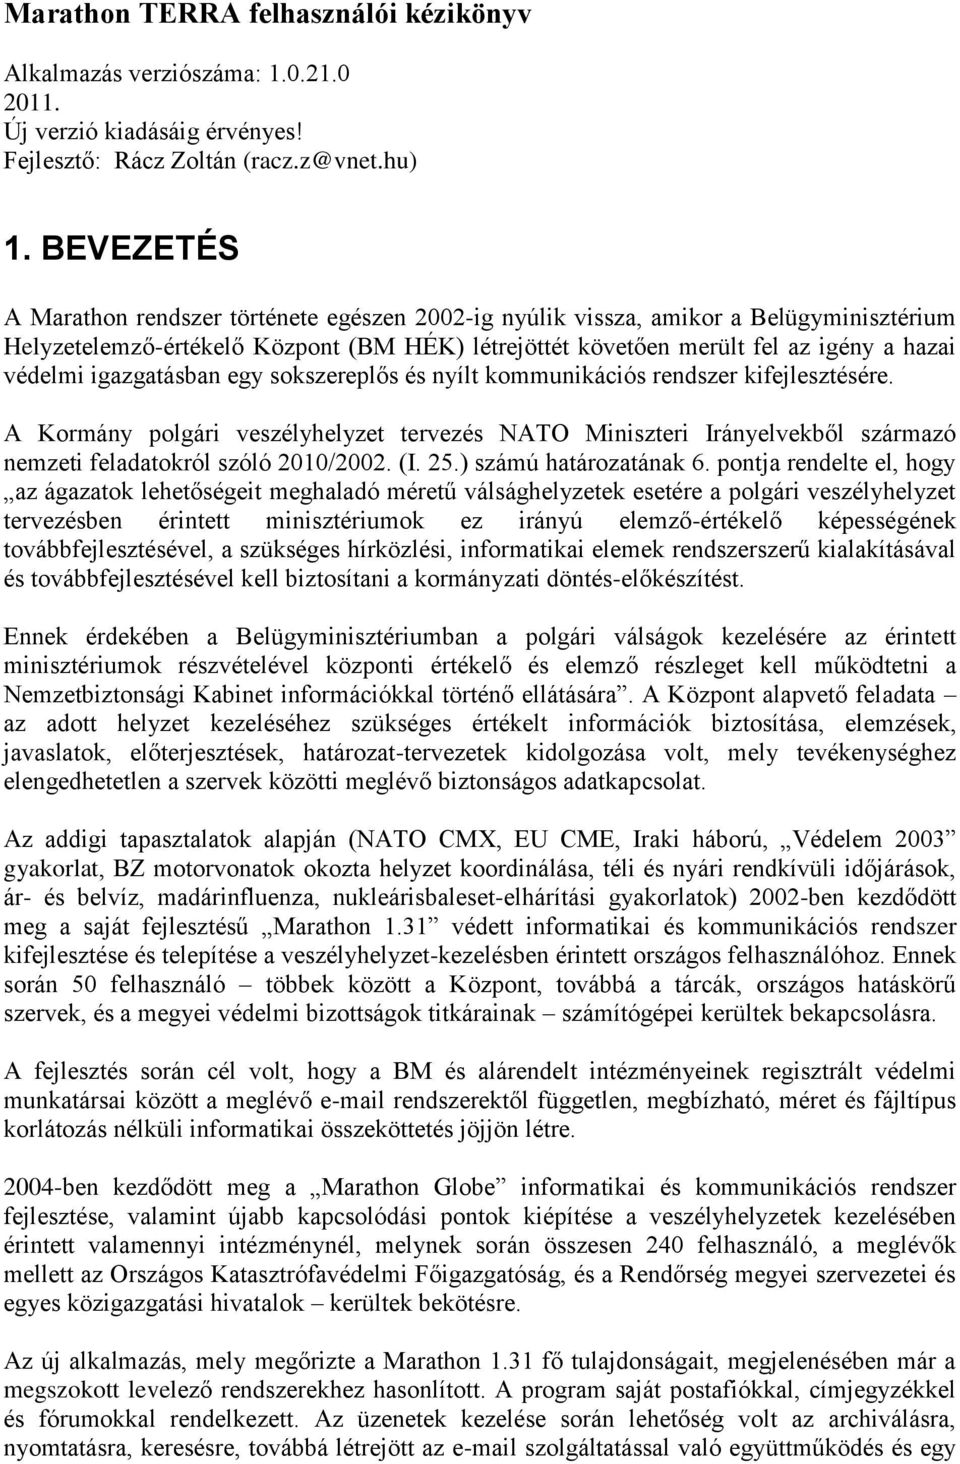 igazgatásban egy sokszereplős és nyílt kommunikációs rendszer kifejlesztésére. A Kormány polgári veszélyhelyzet tervezés NATO Miniszteri Irányelvekből származó nemzeti feladatokról szóló 2010/2002.